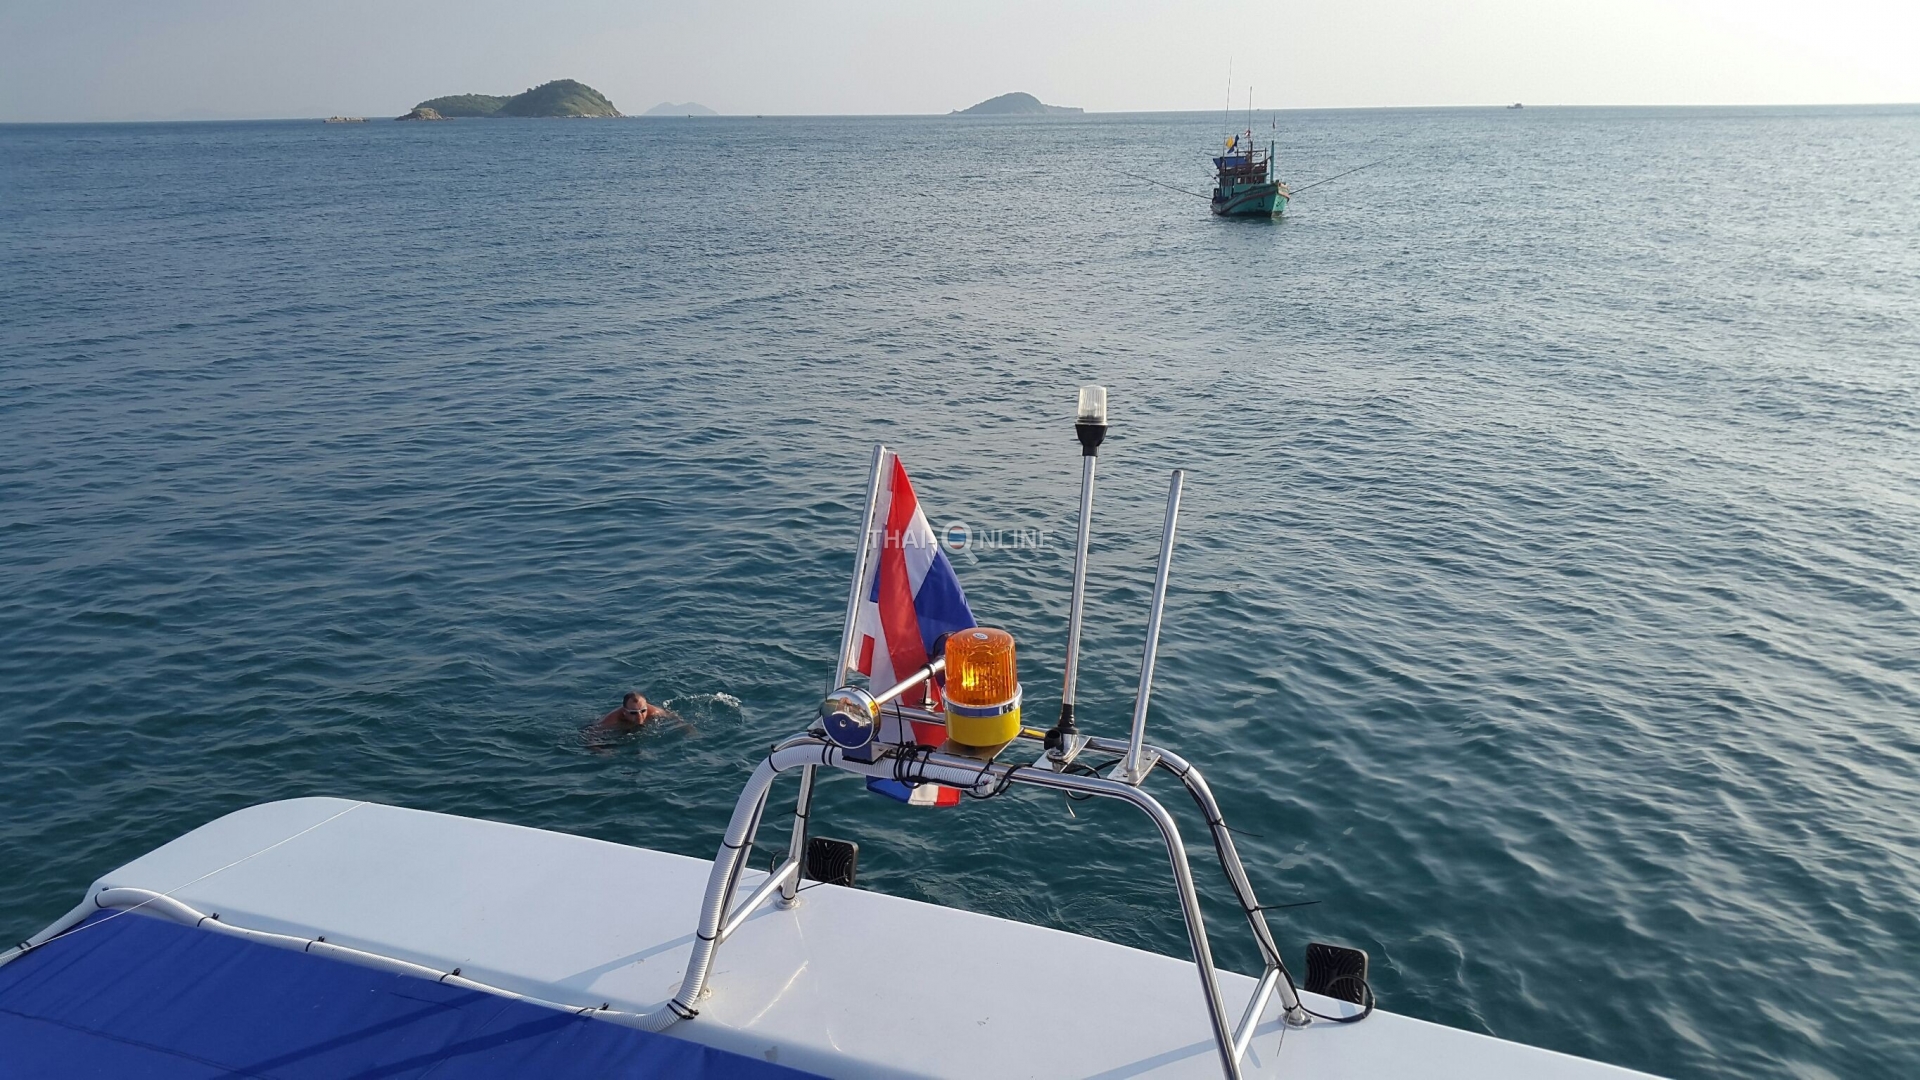 Остров Драконов на катамаране Рамаяна морская экскурсия компании Seven Countries из Паттайи Таиланд фото 10